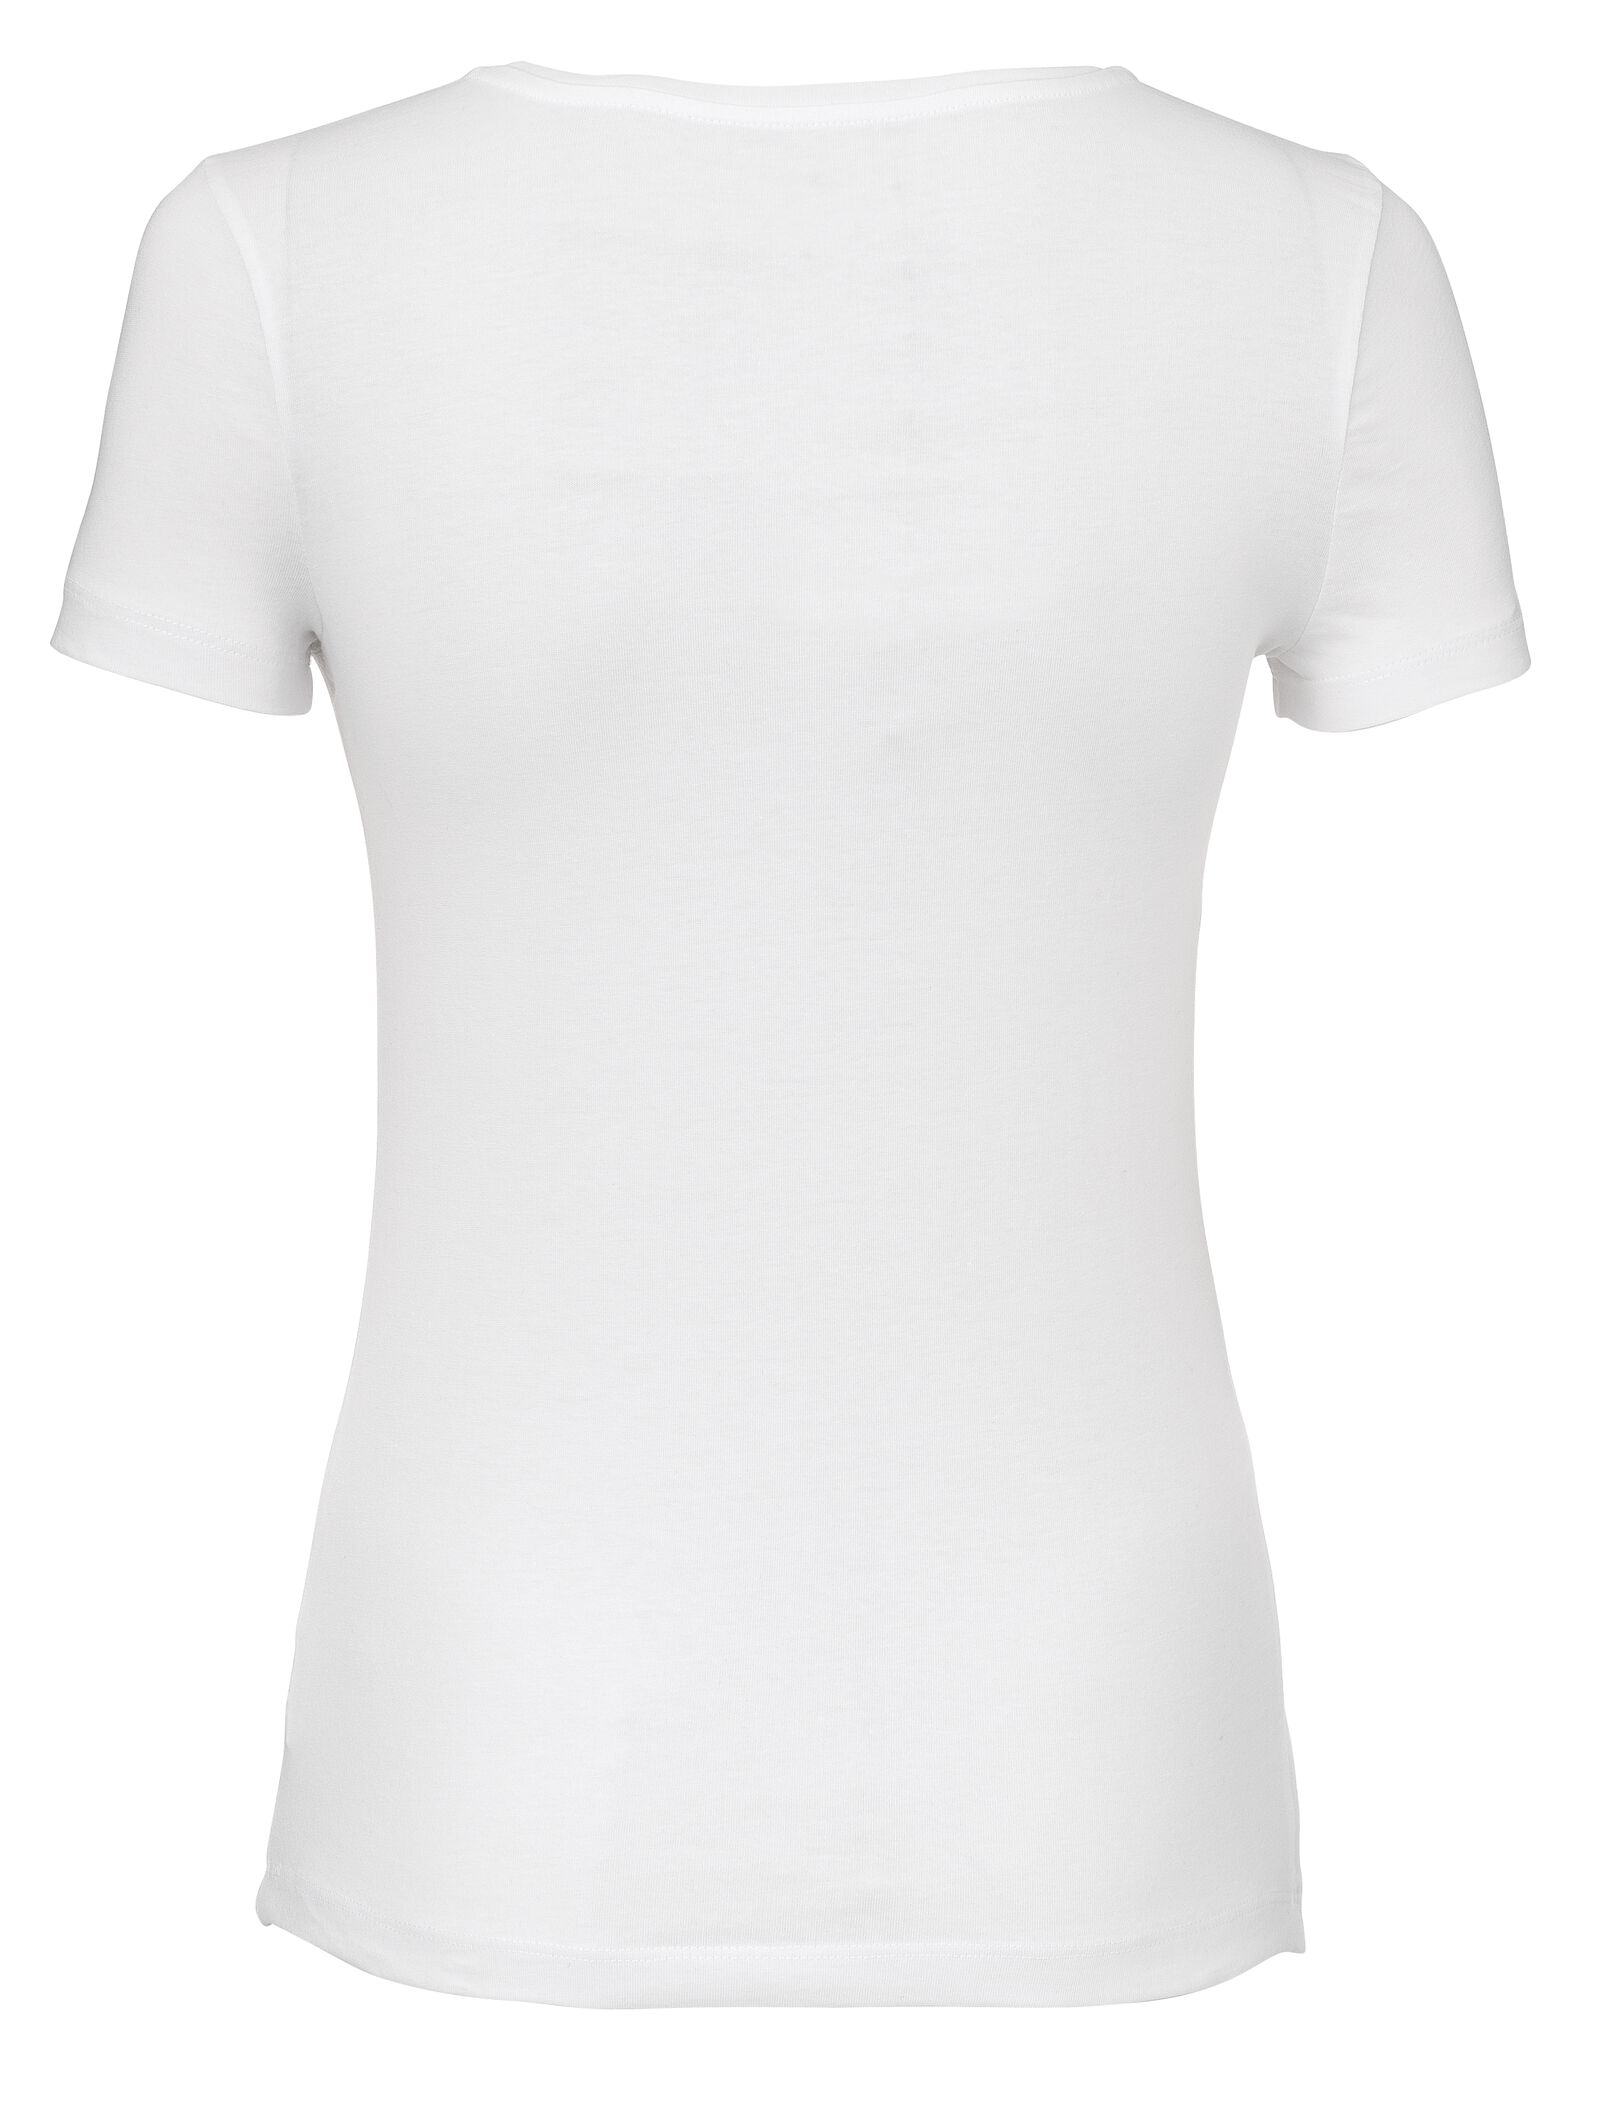 Damen-T-Shirt weiß M - 36301762 - HEMA